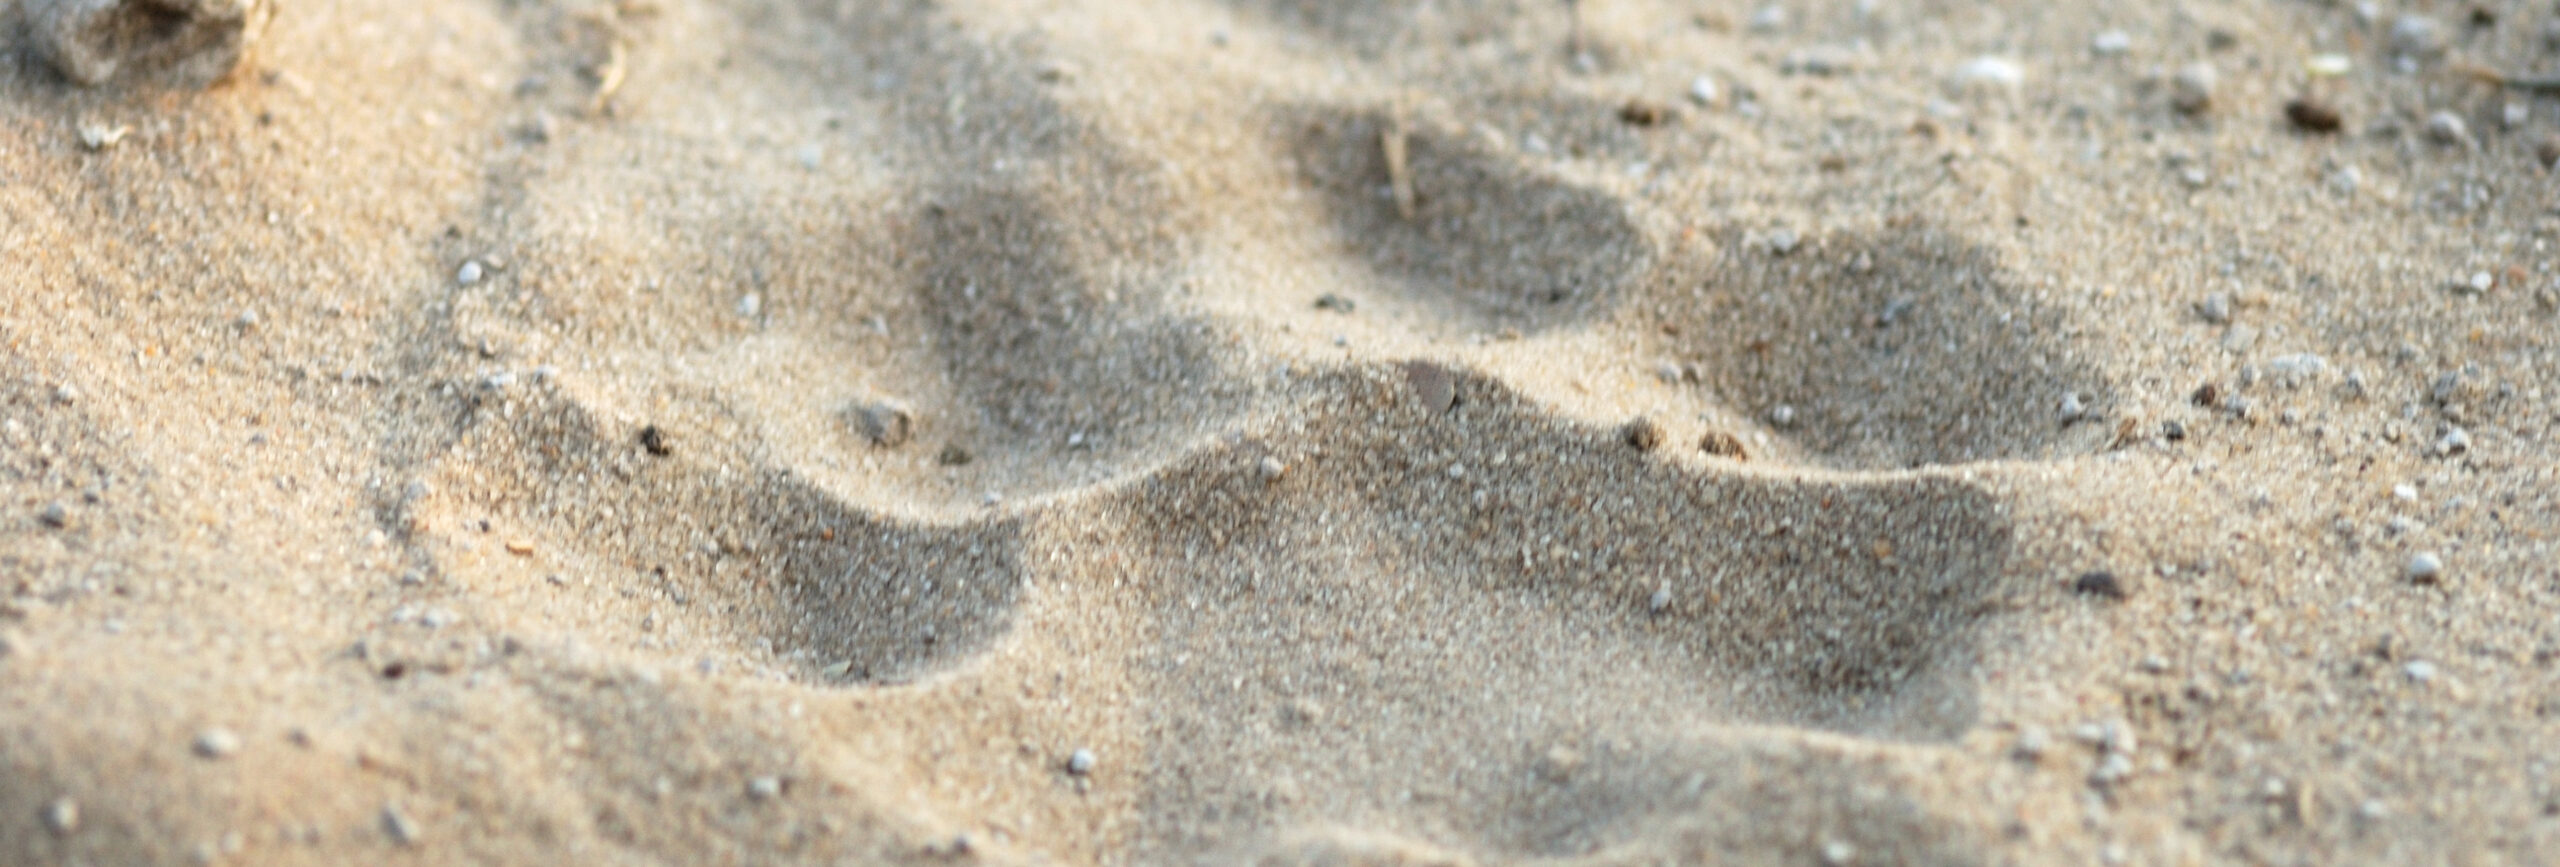 Löwenspur im Sand. - insysta